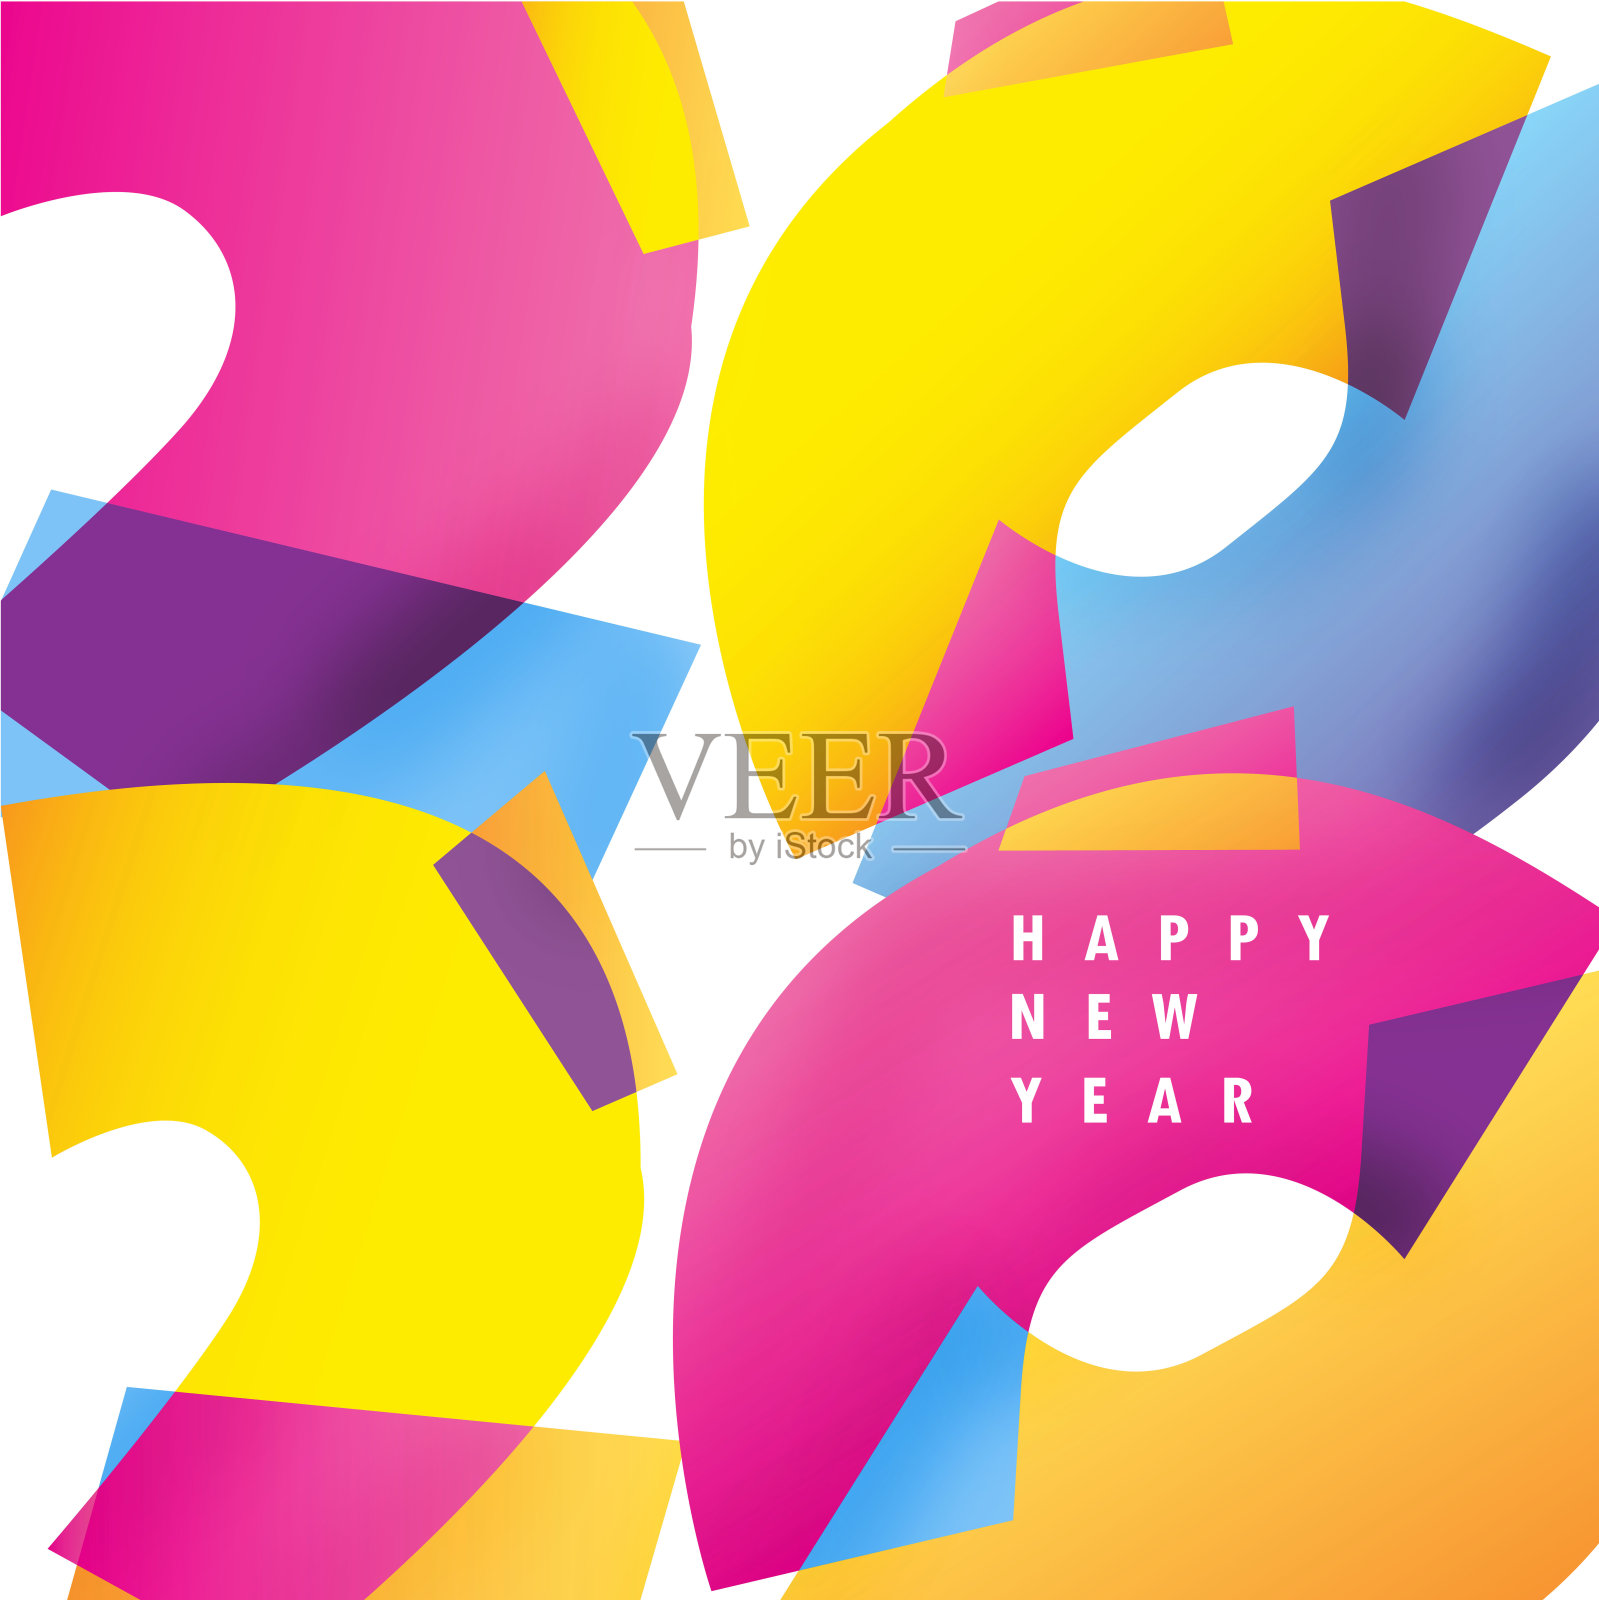 新年快乐2020 -可爱模板抽象彩色横幅海报艺术。新年邀请2020设计模板素材